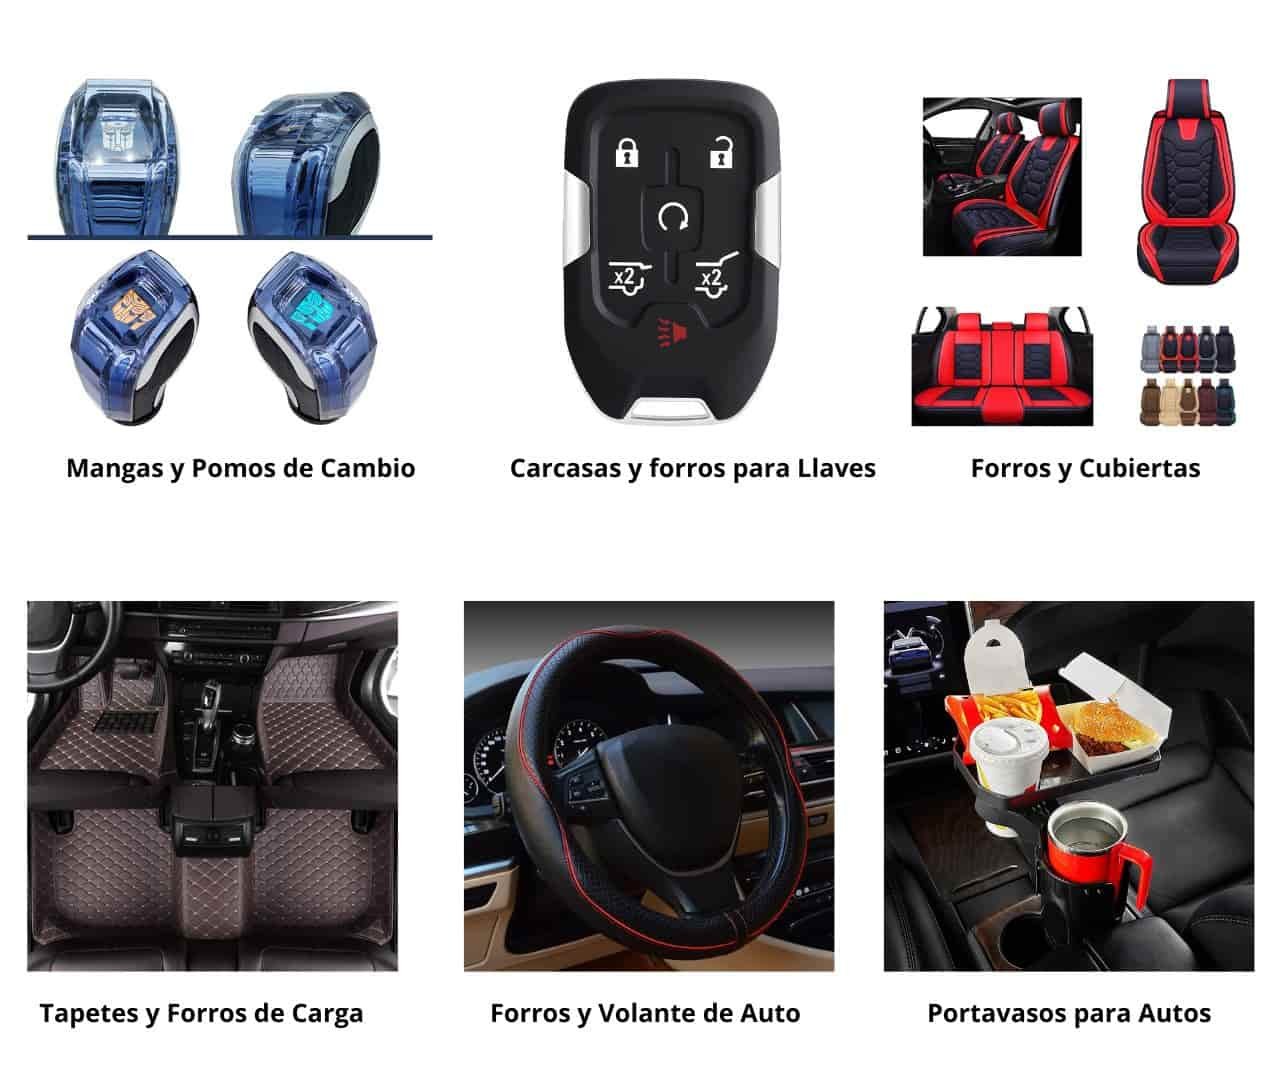 Los gadgets tecnologicos para el coche